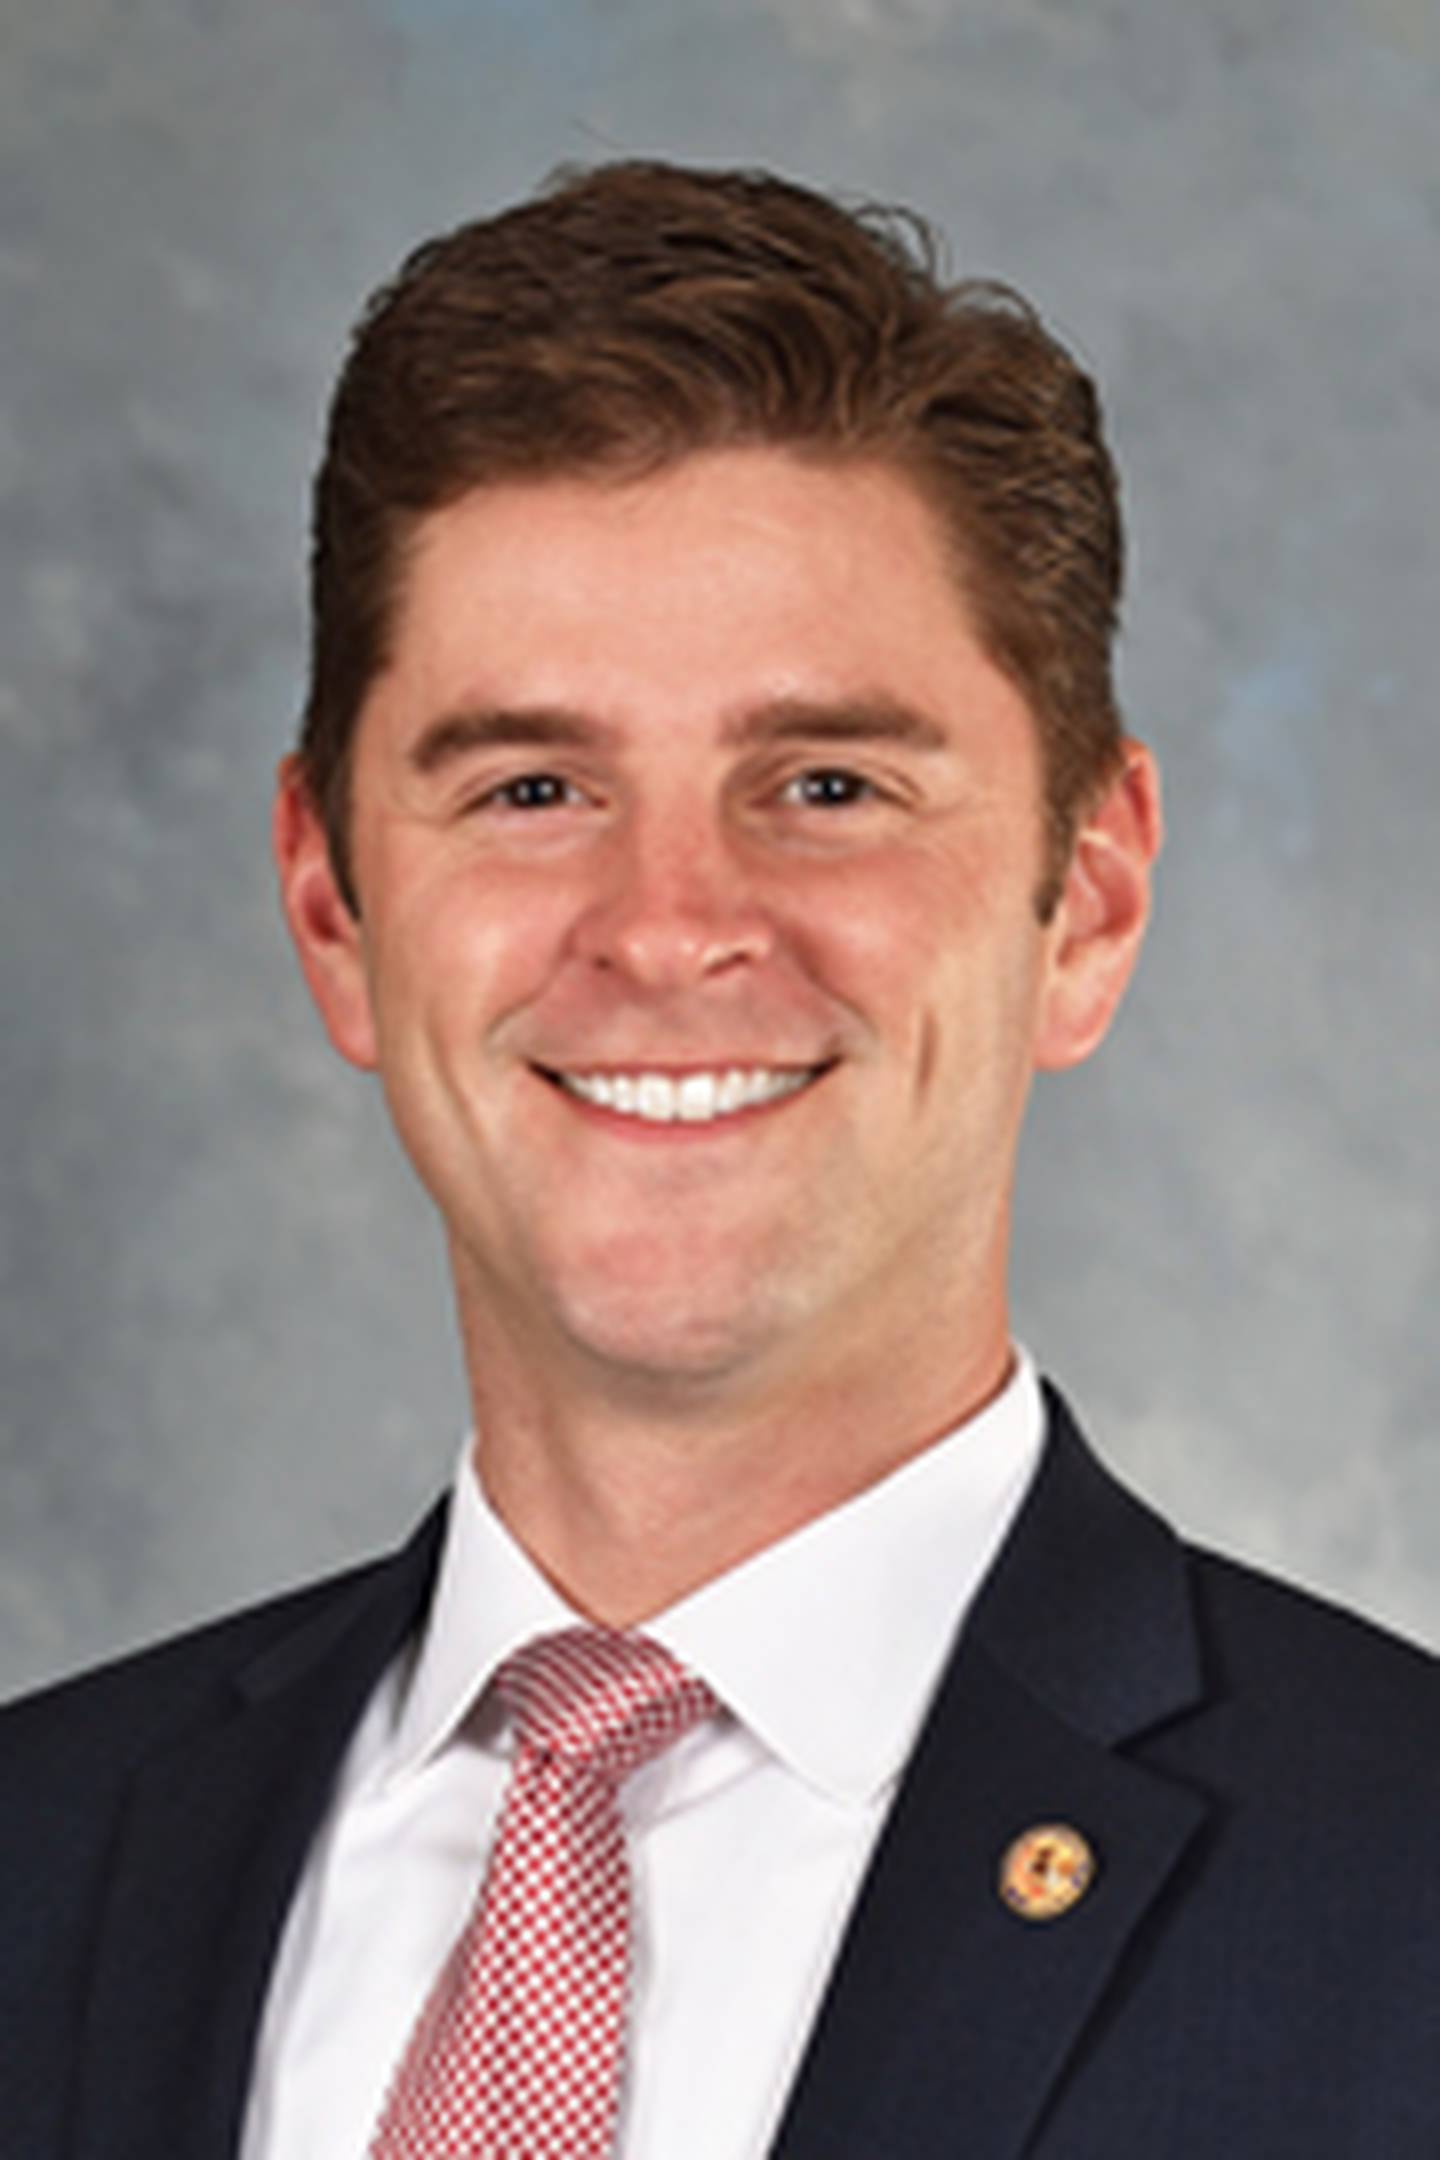 Illinois Rep. Ryan Spain, R-Peoria